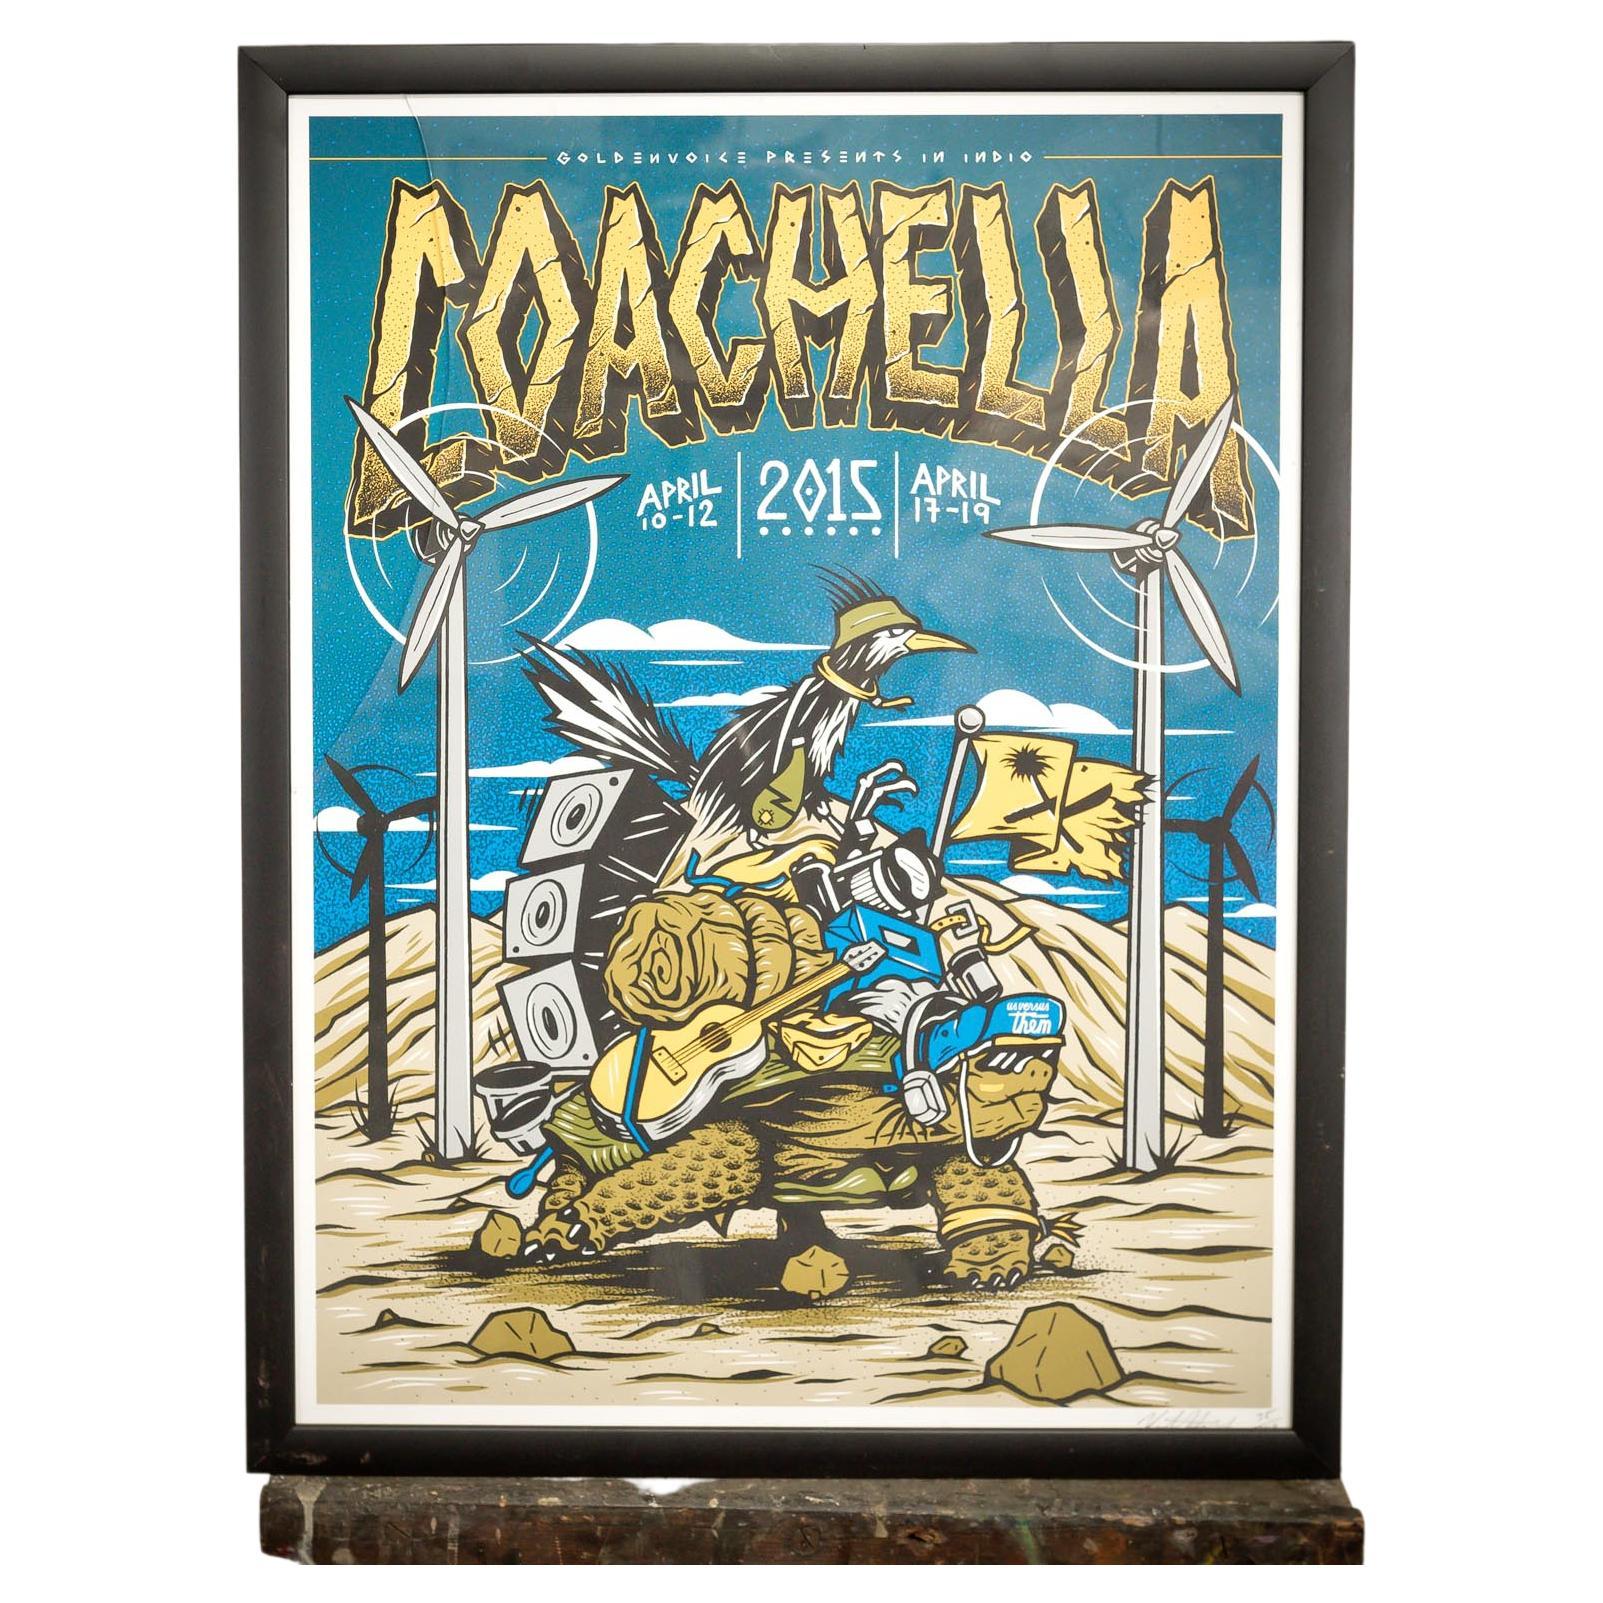 Coachella Ltd Edition Print 1 For Sale